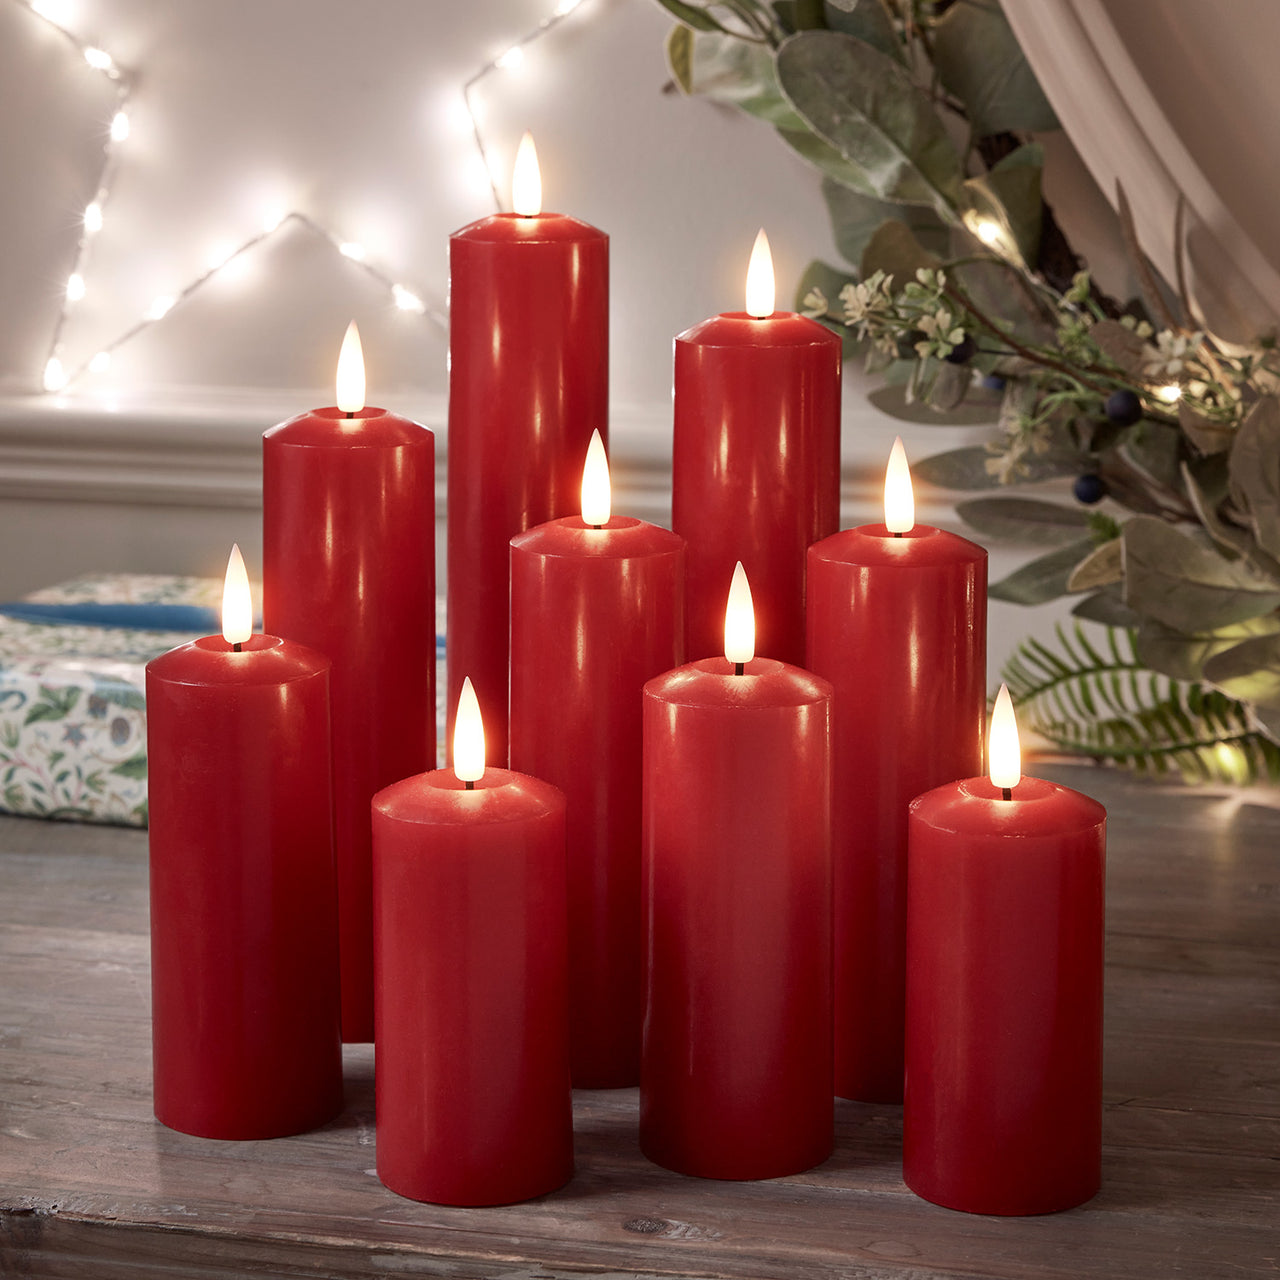 Bougie flottantes rouges CARREFOUR HOME : les 5 bougies à Prix